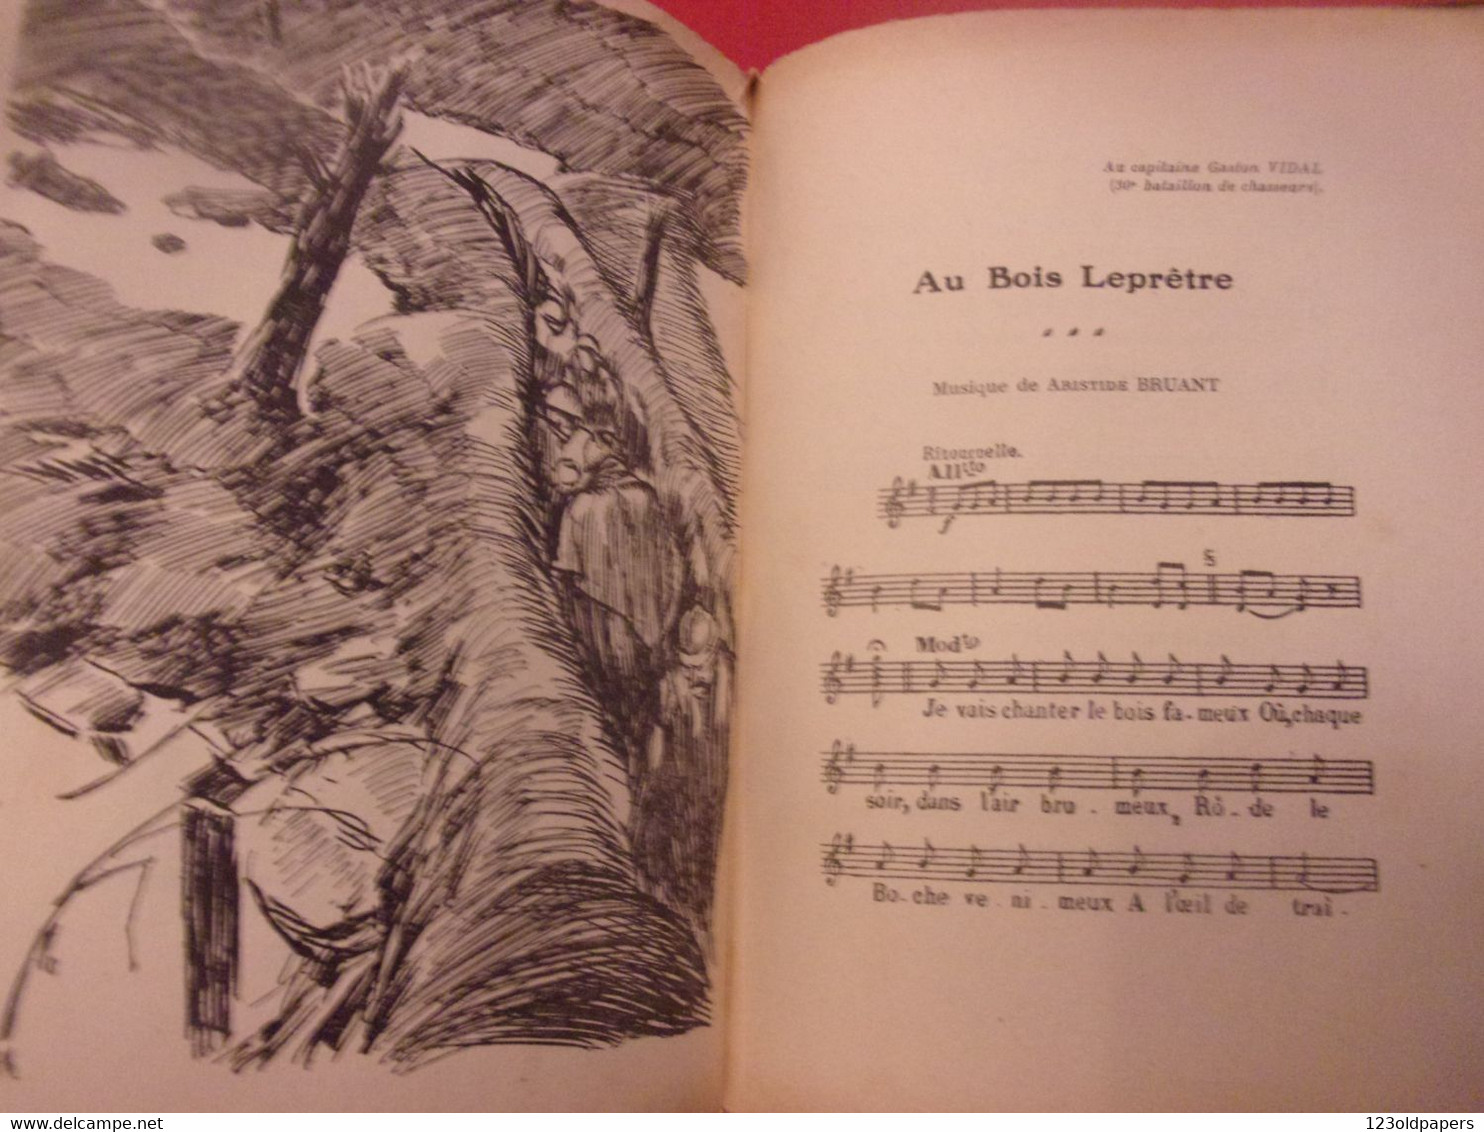 ️ La chanson des poilus Lucien Boyer ENVOI DE L AUTEUR  SALABERT 1918 ILLUSTRE ARNOUX  / DE VALERIO WWI